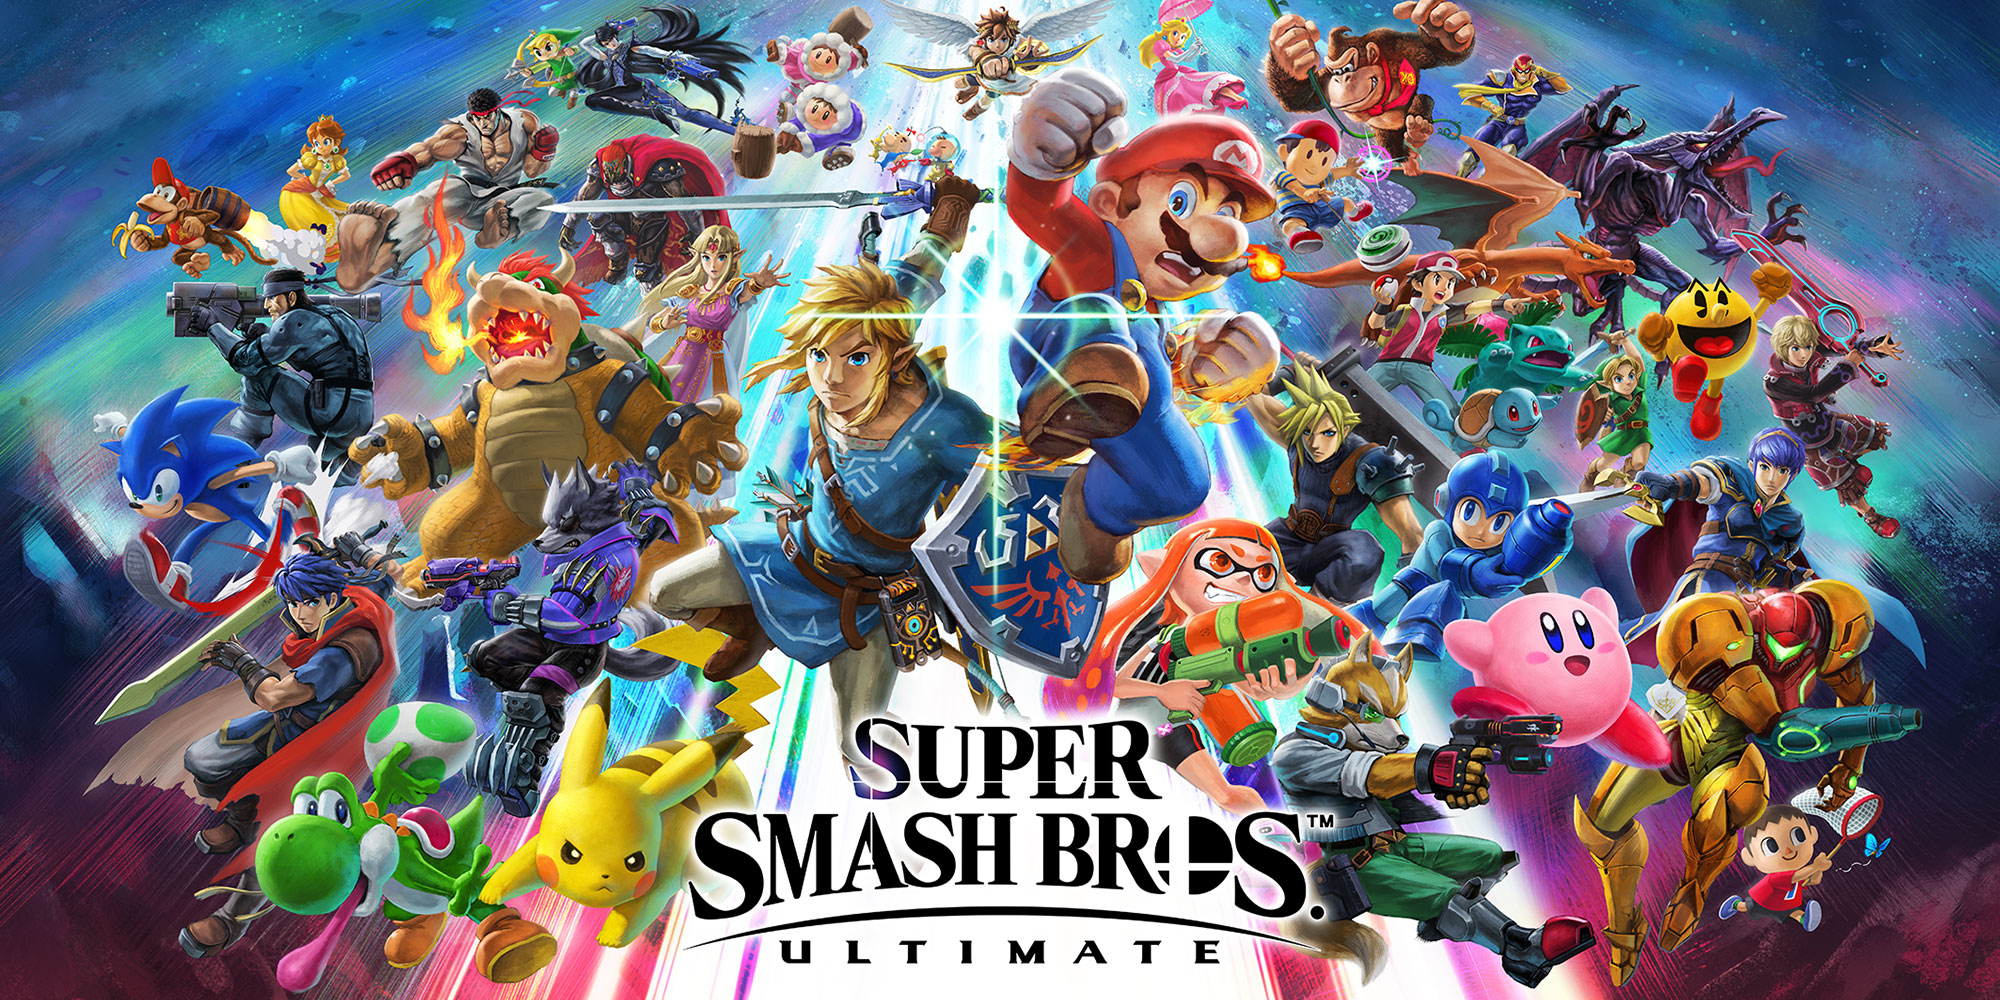 De nouveaux combattants téléchargeables pour Super Smash Bros. Ultimate sont en préparation : Banjo & Kazooie et le héros de Dragon Quest !